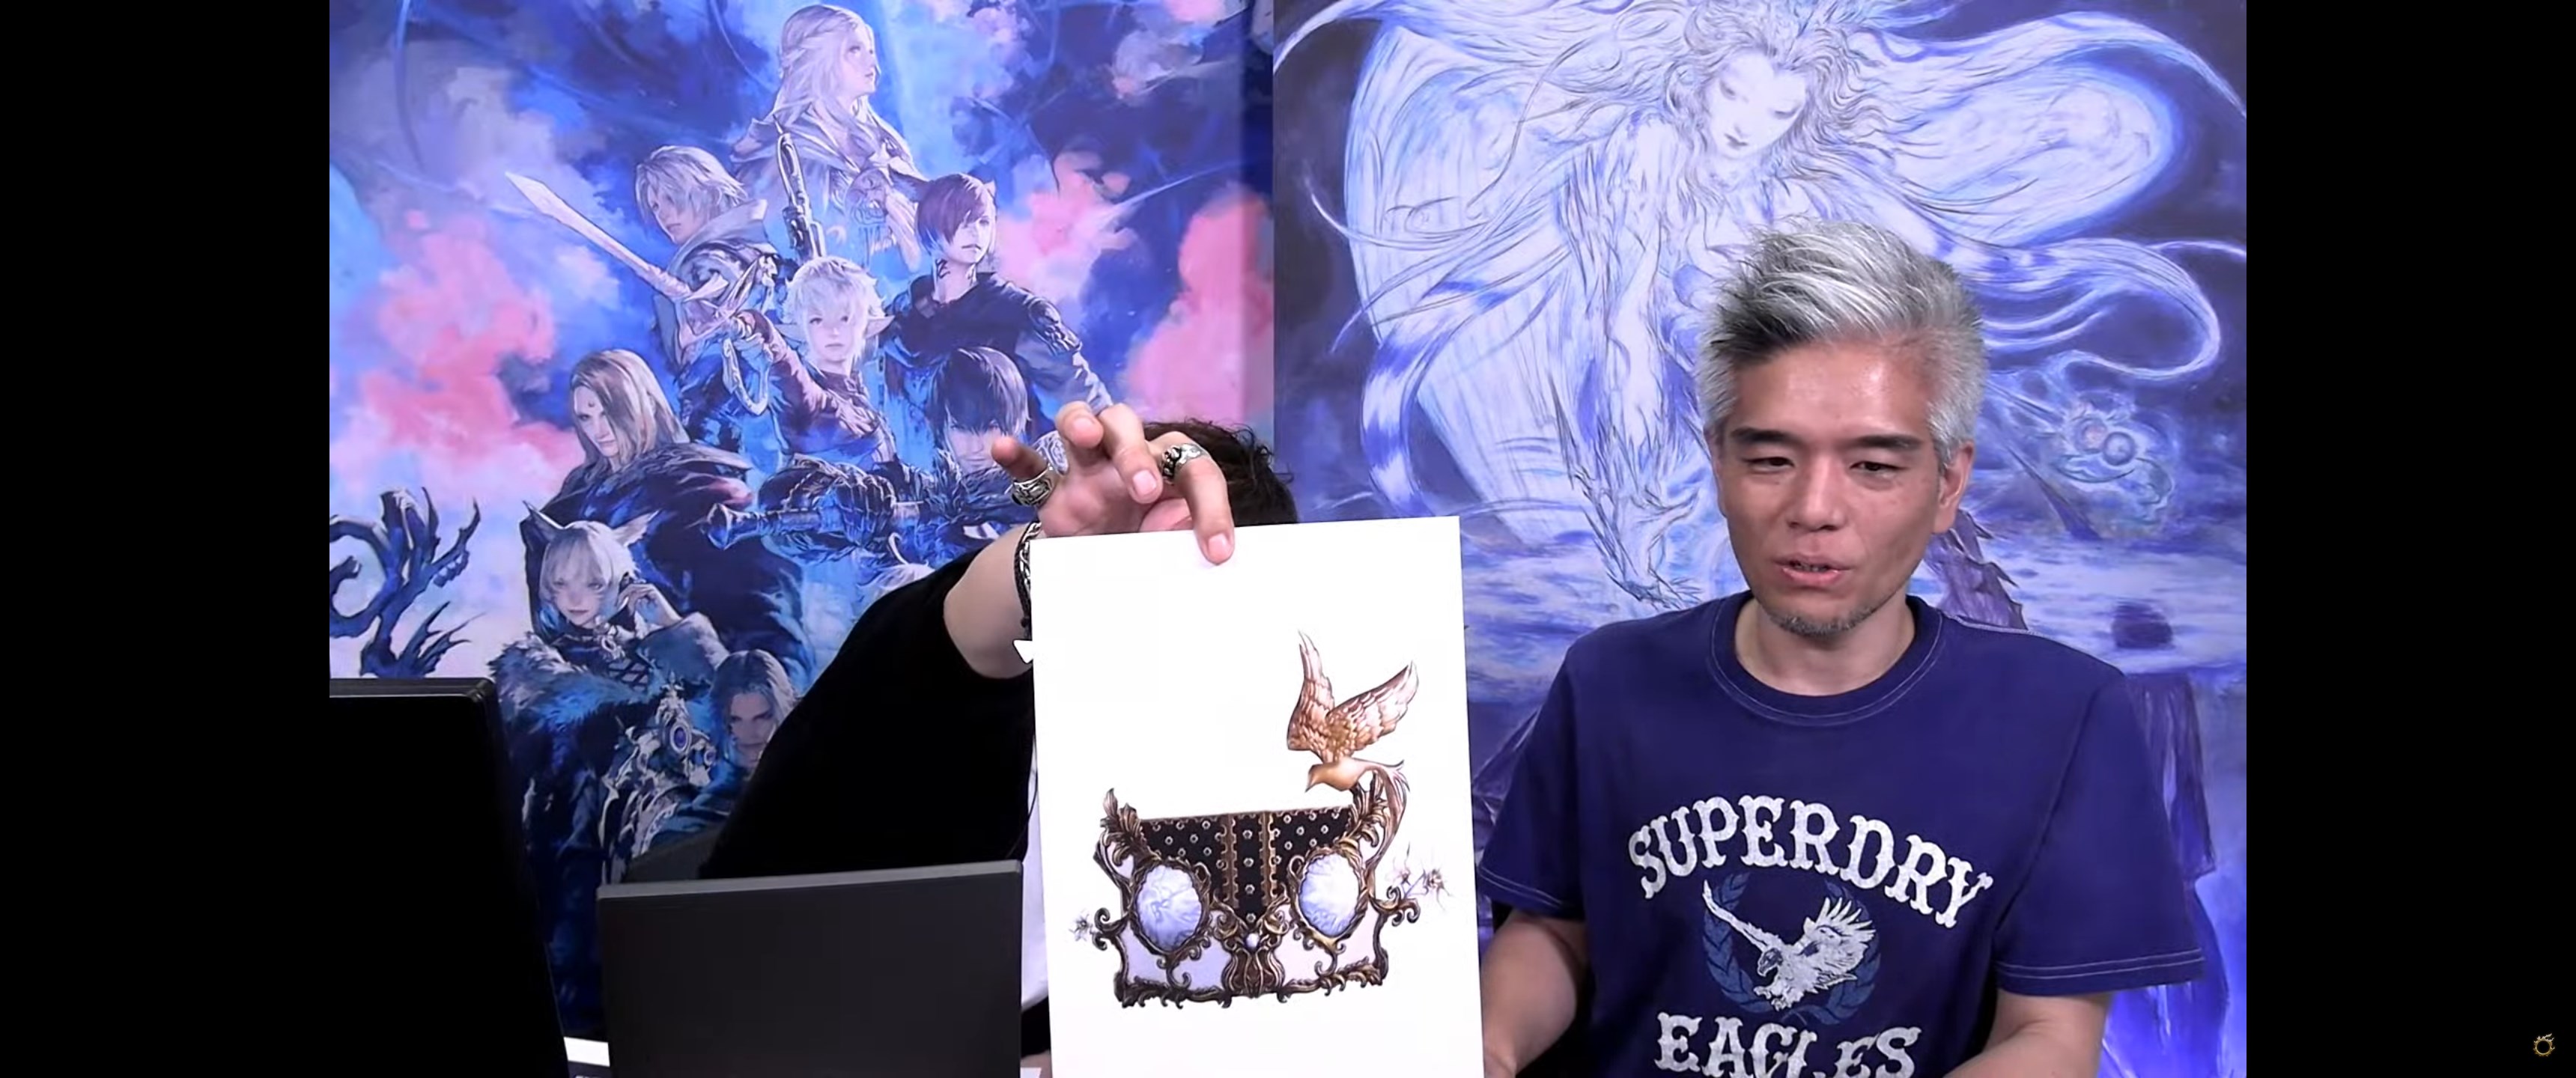 Final Fantasy XIV : Résumé de la 77è LiveLetter